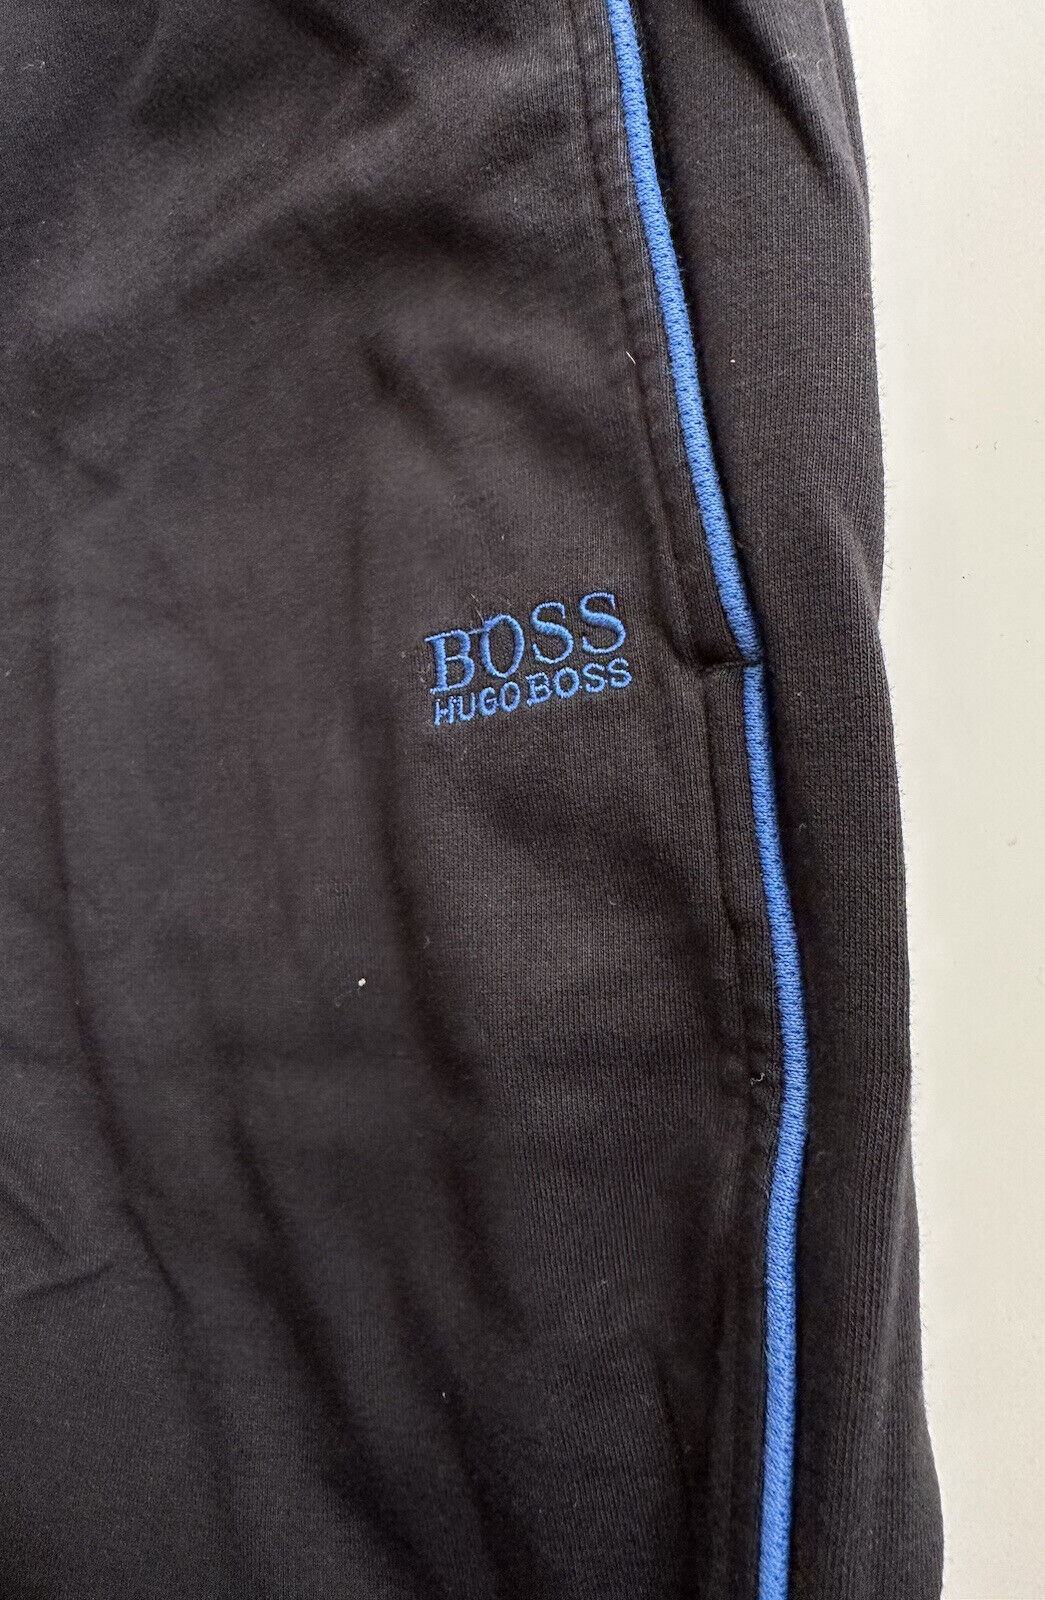 Boss Hugo Boss Black Casual Pants Small